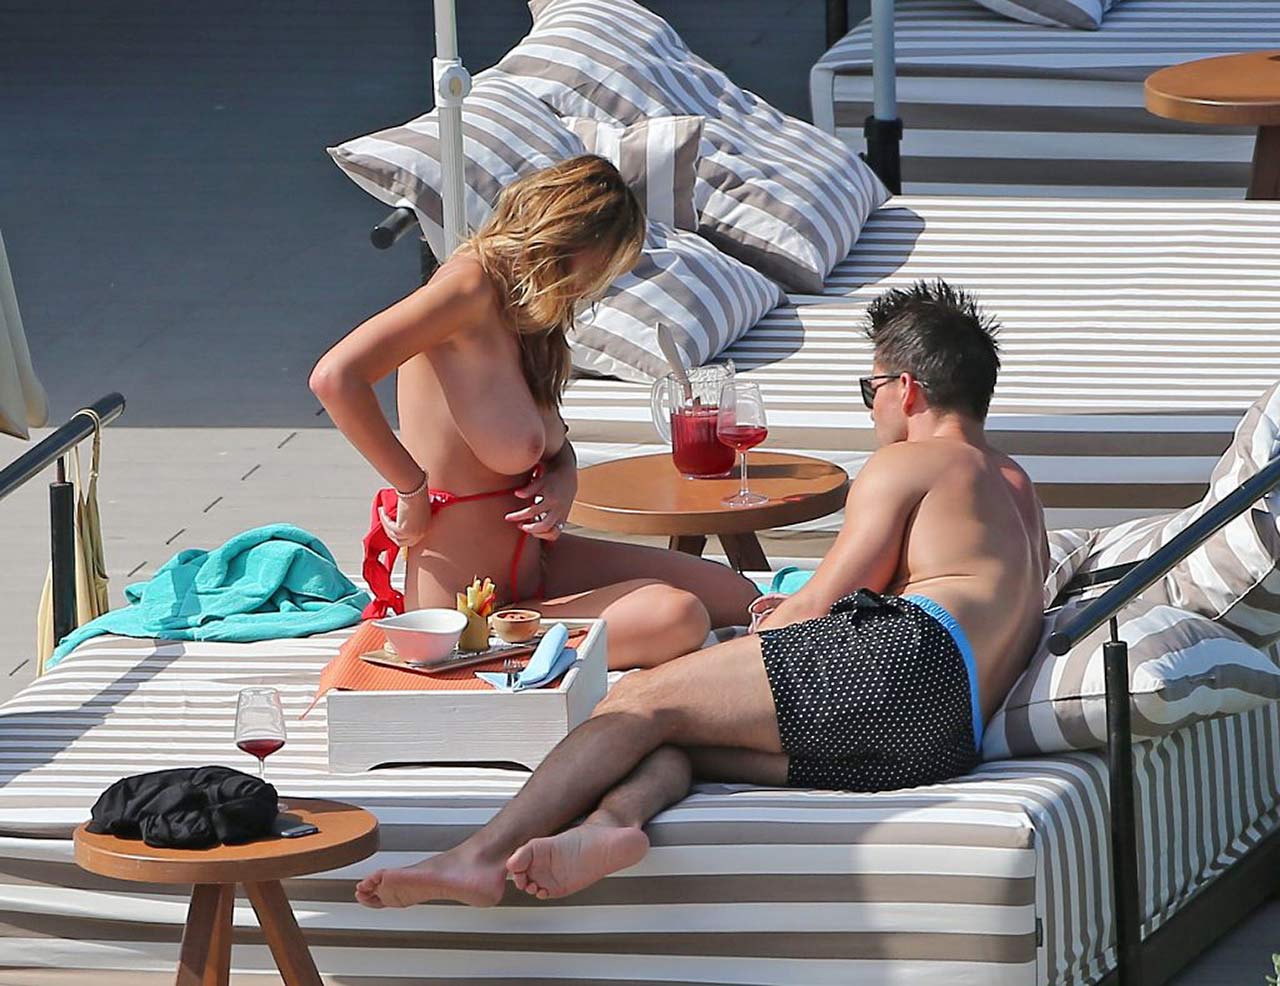 Model Rhian Sugden Topless Sunbathing In Ibiza Scandal